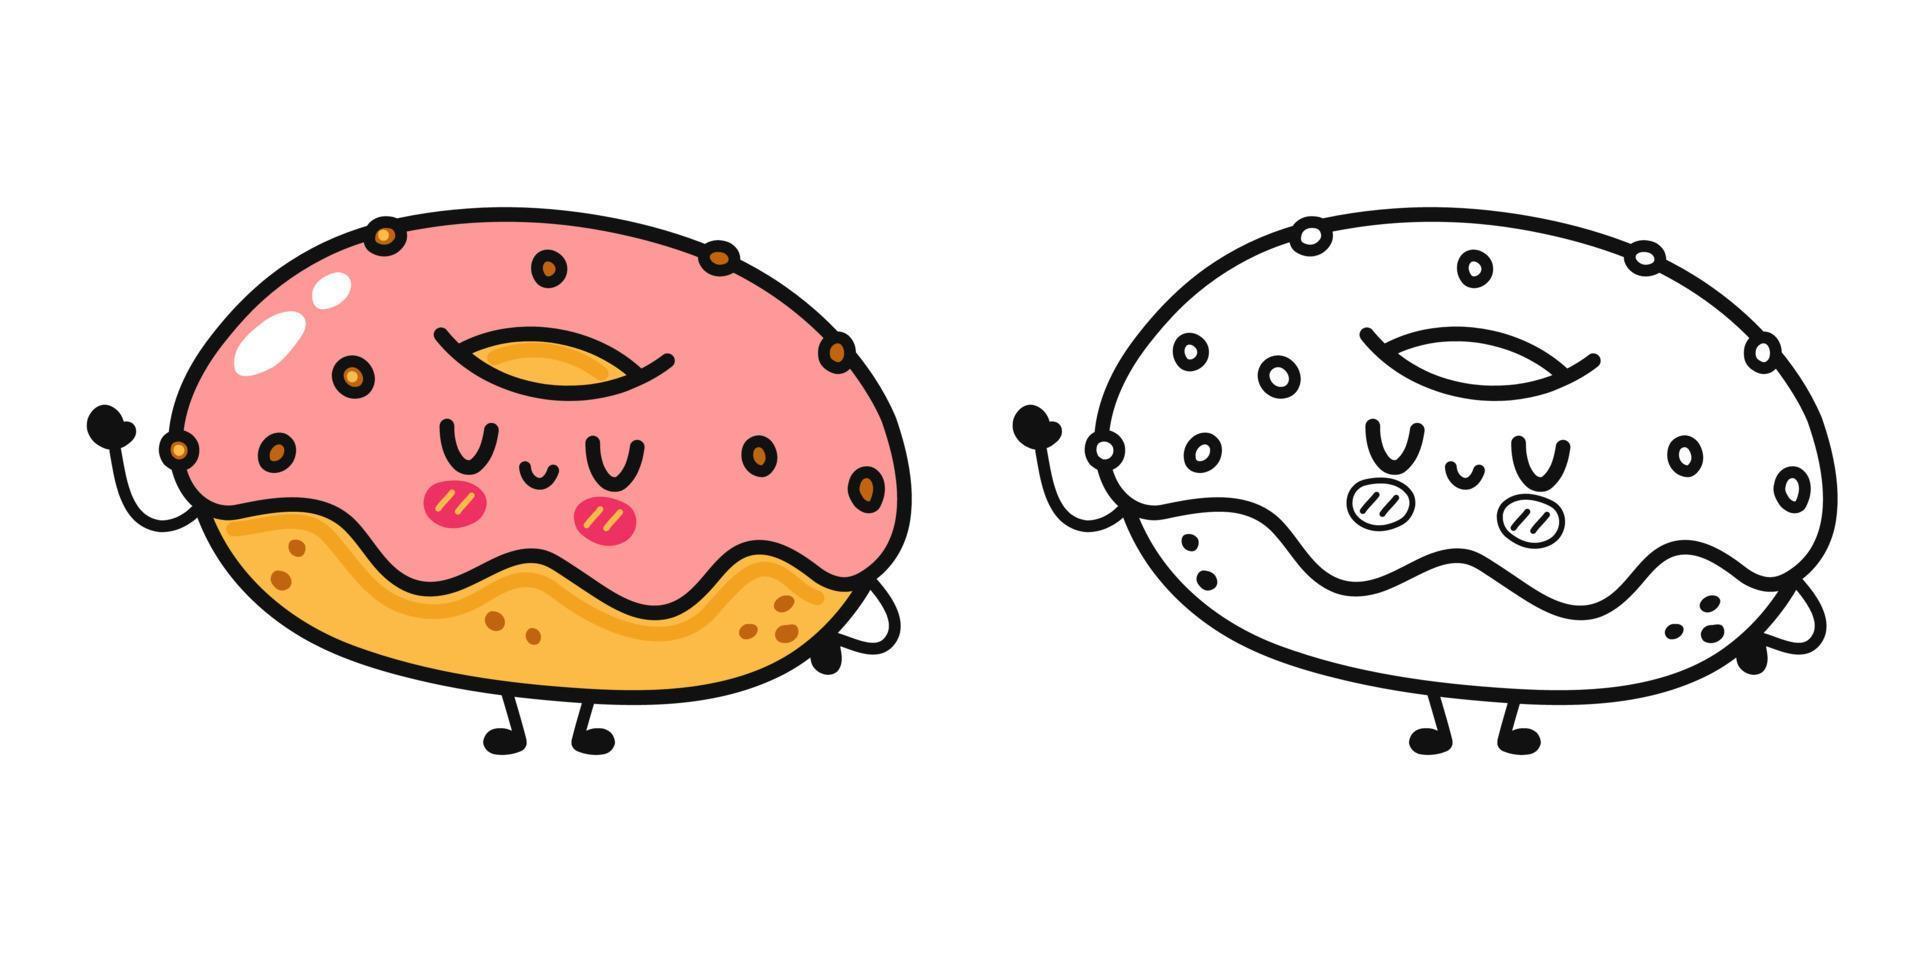 lustige niedliche glückliche donut-charaktere bündelsatz. vektor hand gezeichnete karikatur kawaii charakter illustration symbol. isoliert auf weißem Hintergrund. Umrisskarikaturillustration für Malbuch